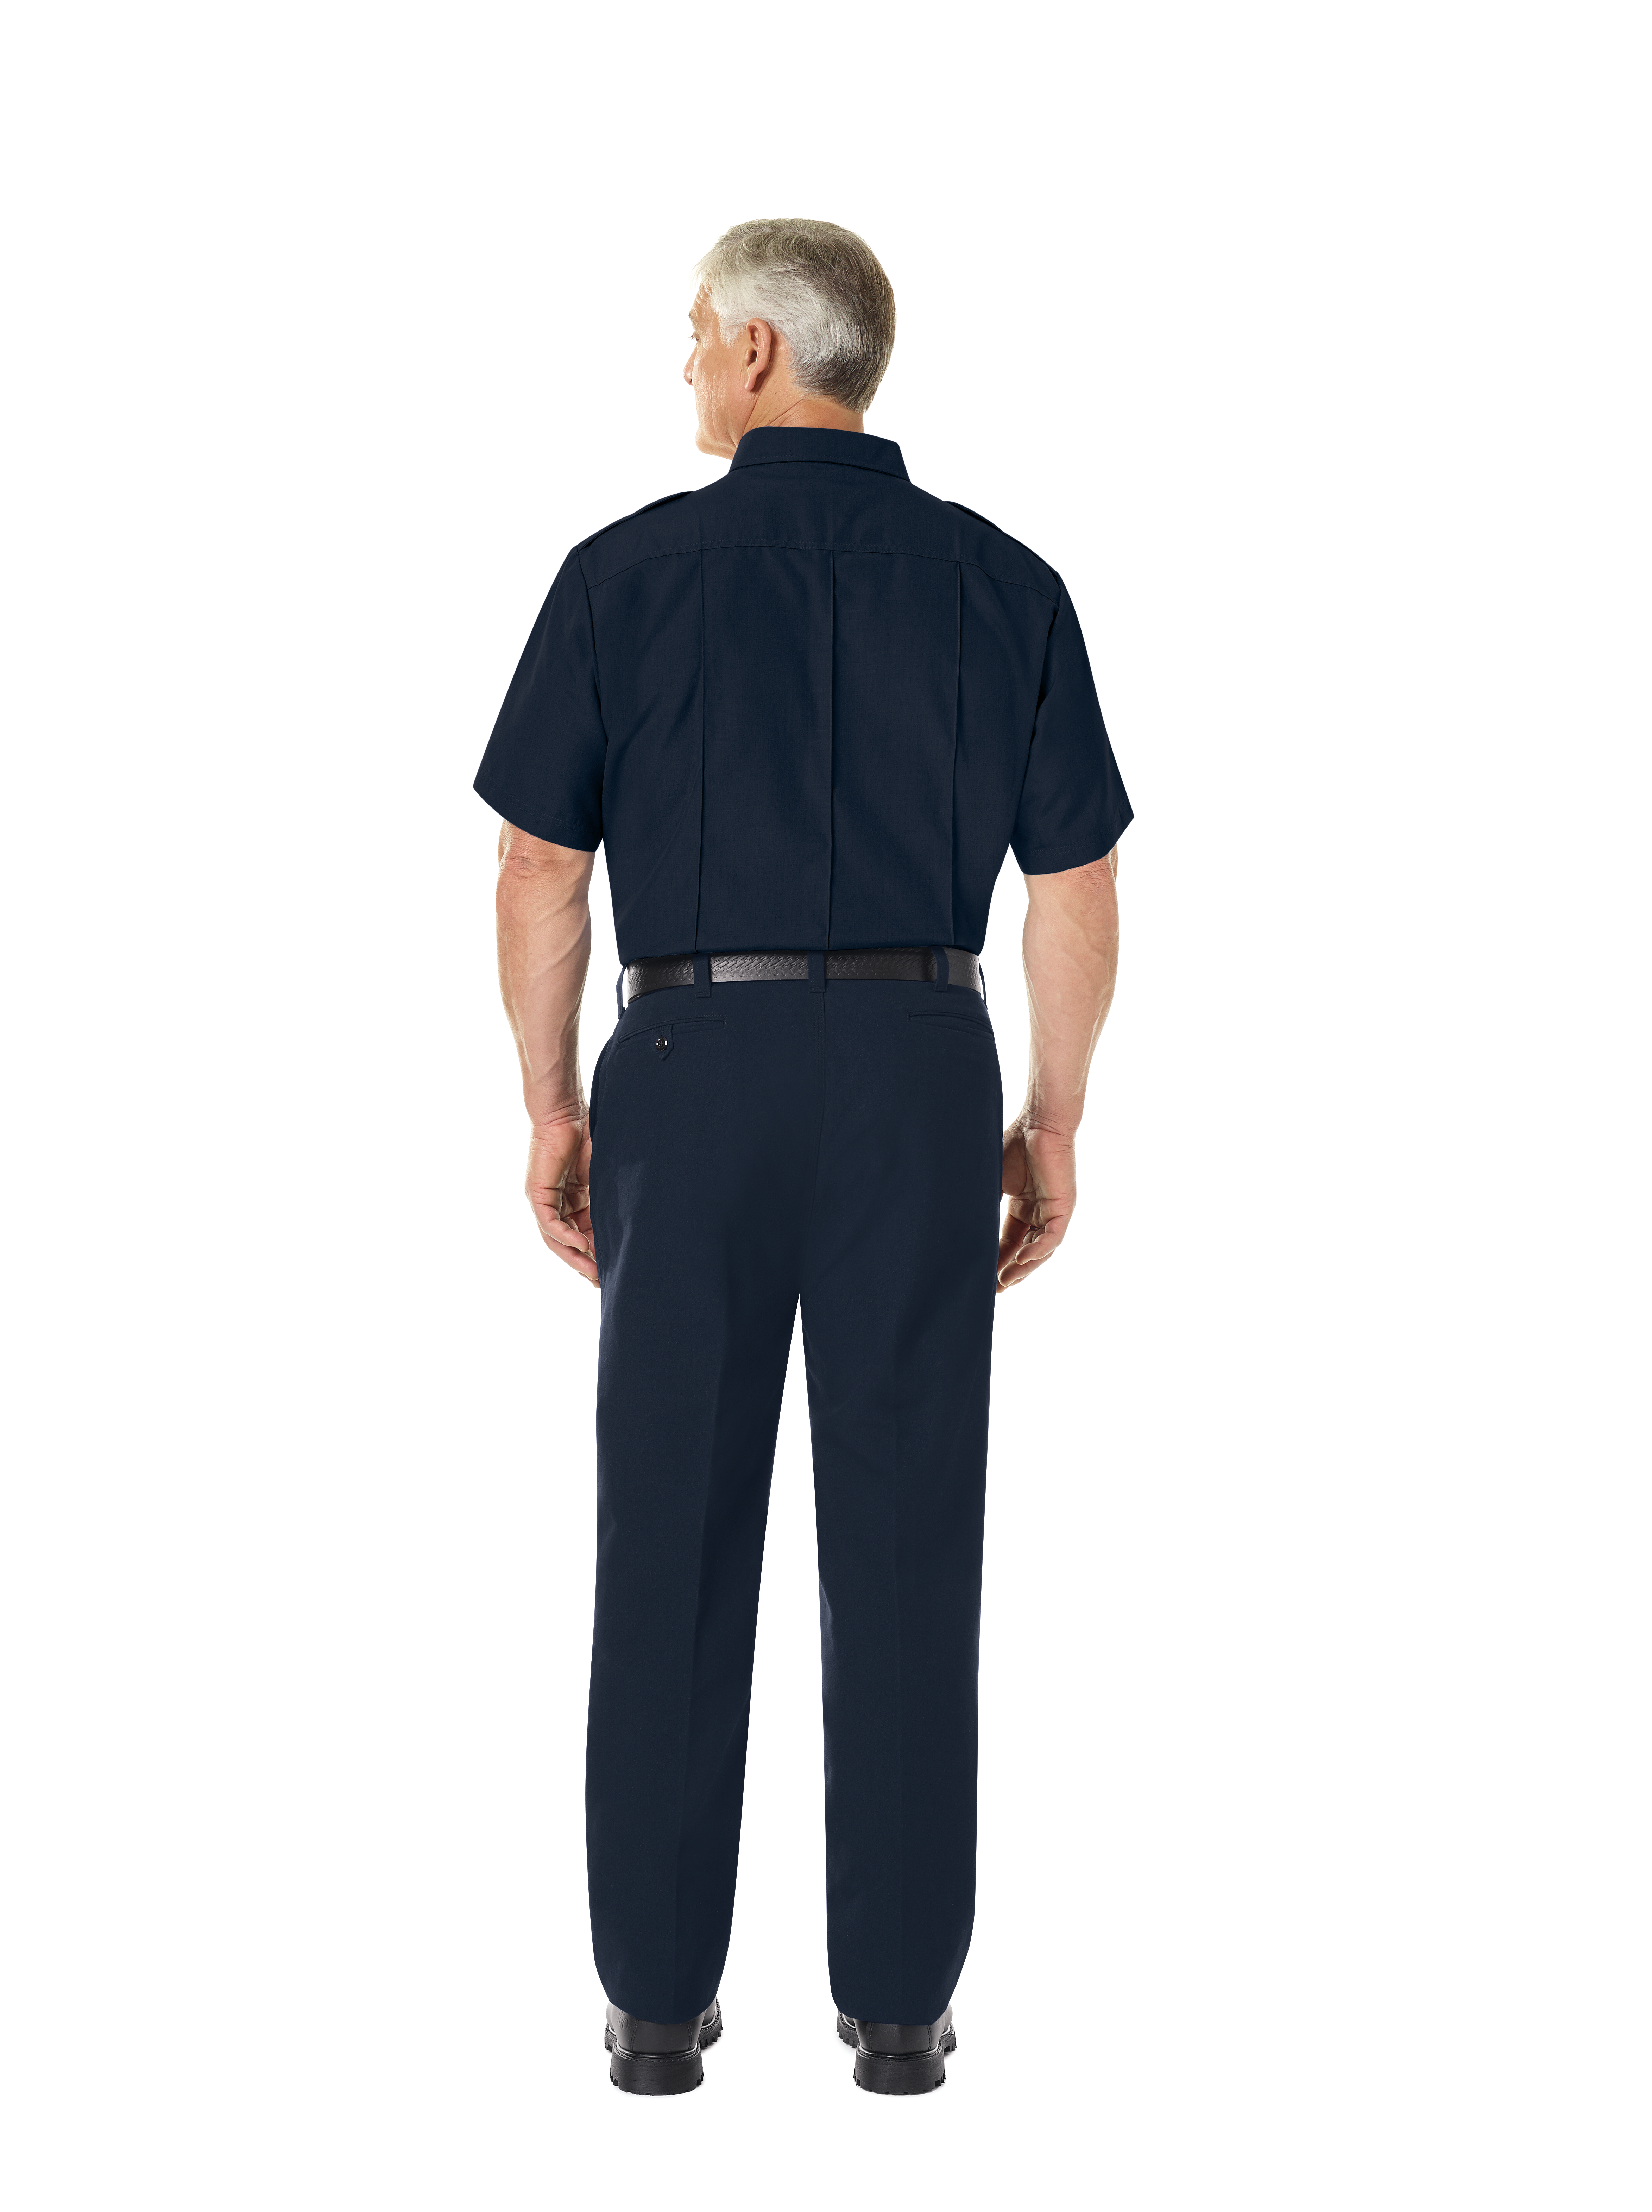 Men's Classic Short Sleeve Fire Chief Shirt | Workrite® Fire Service